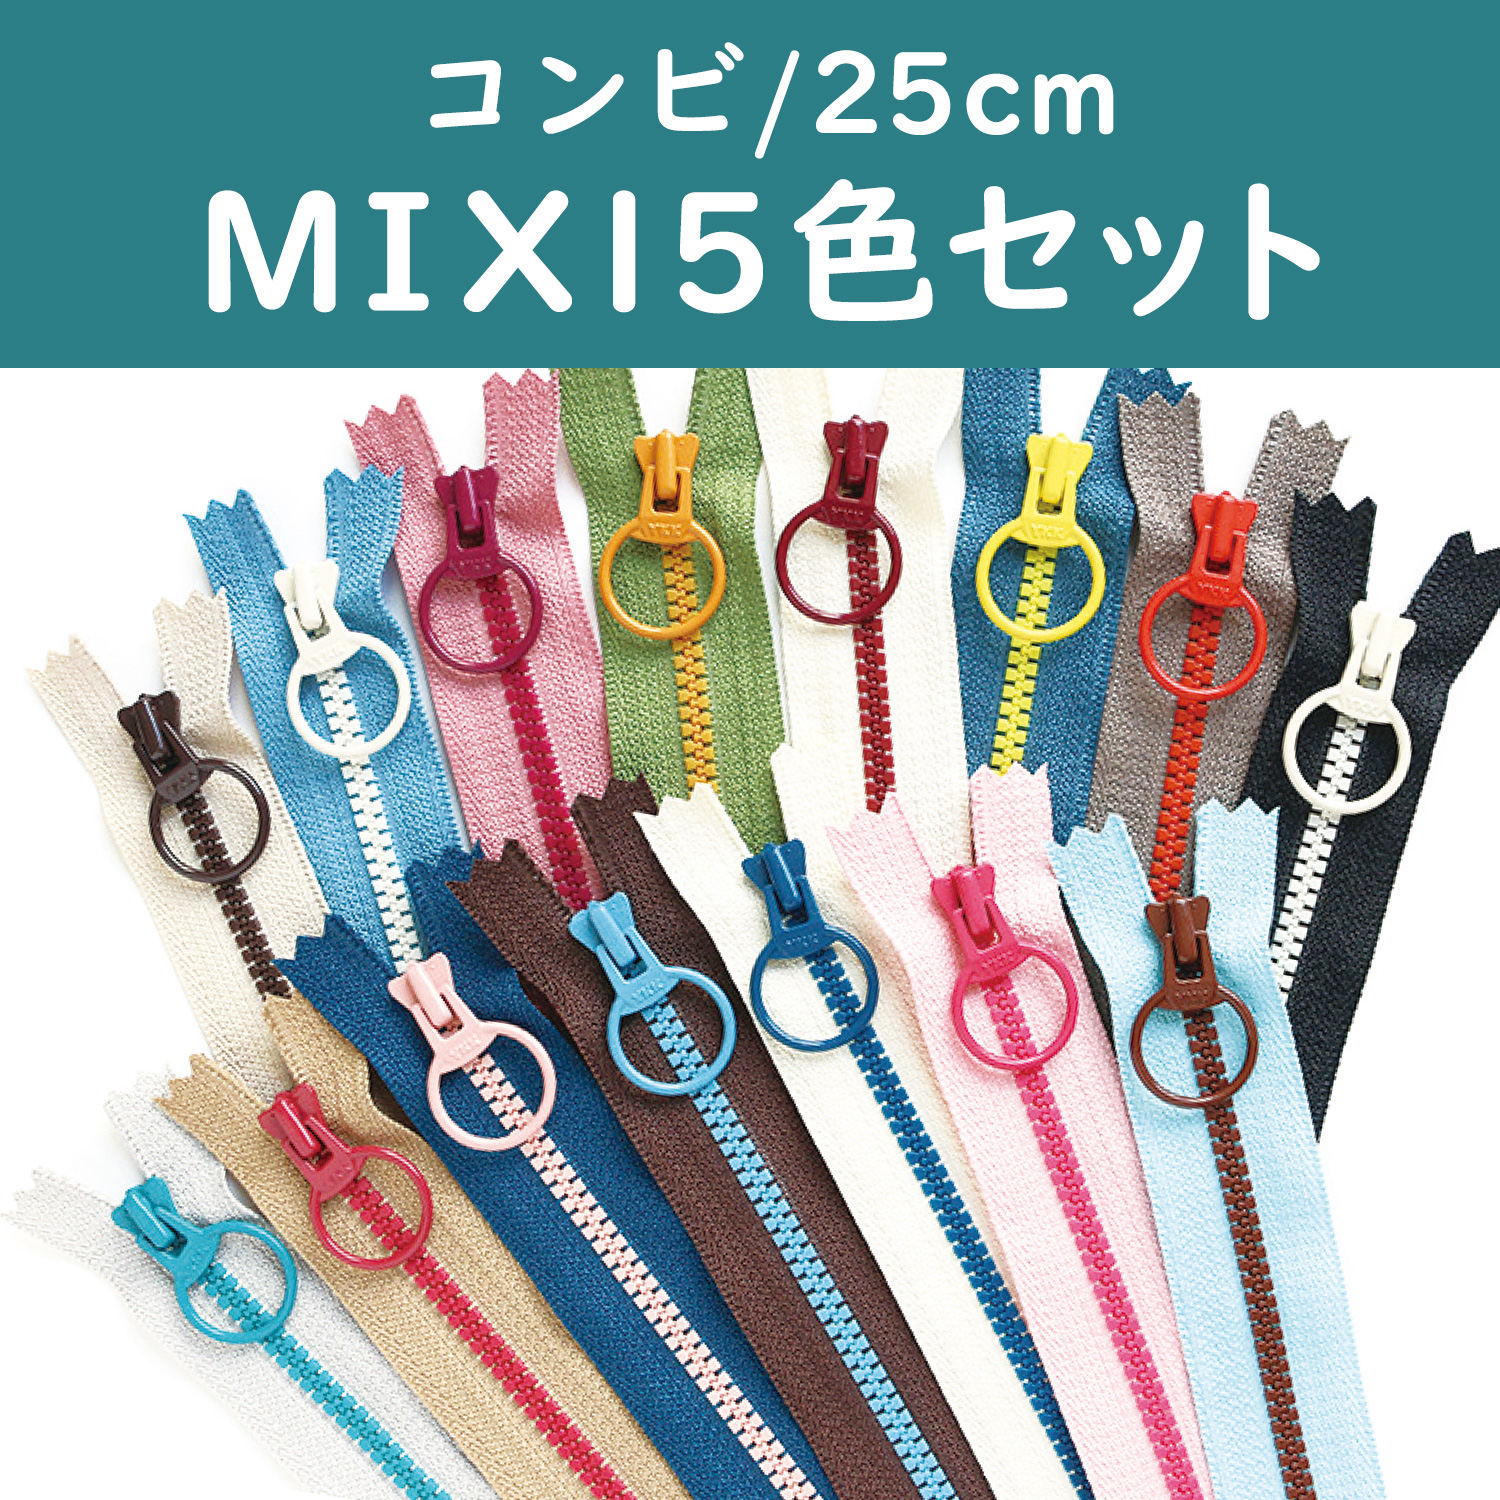 3VSC25-15MIX Zipper Combi 25cm 15 colors 1pcs each (set)